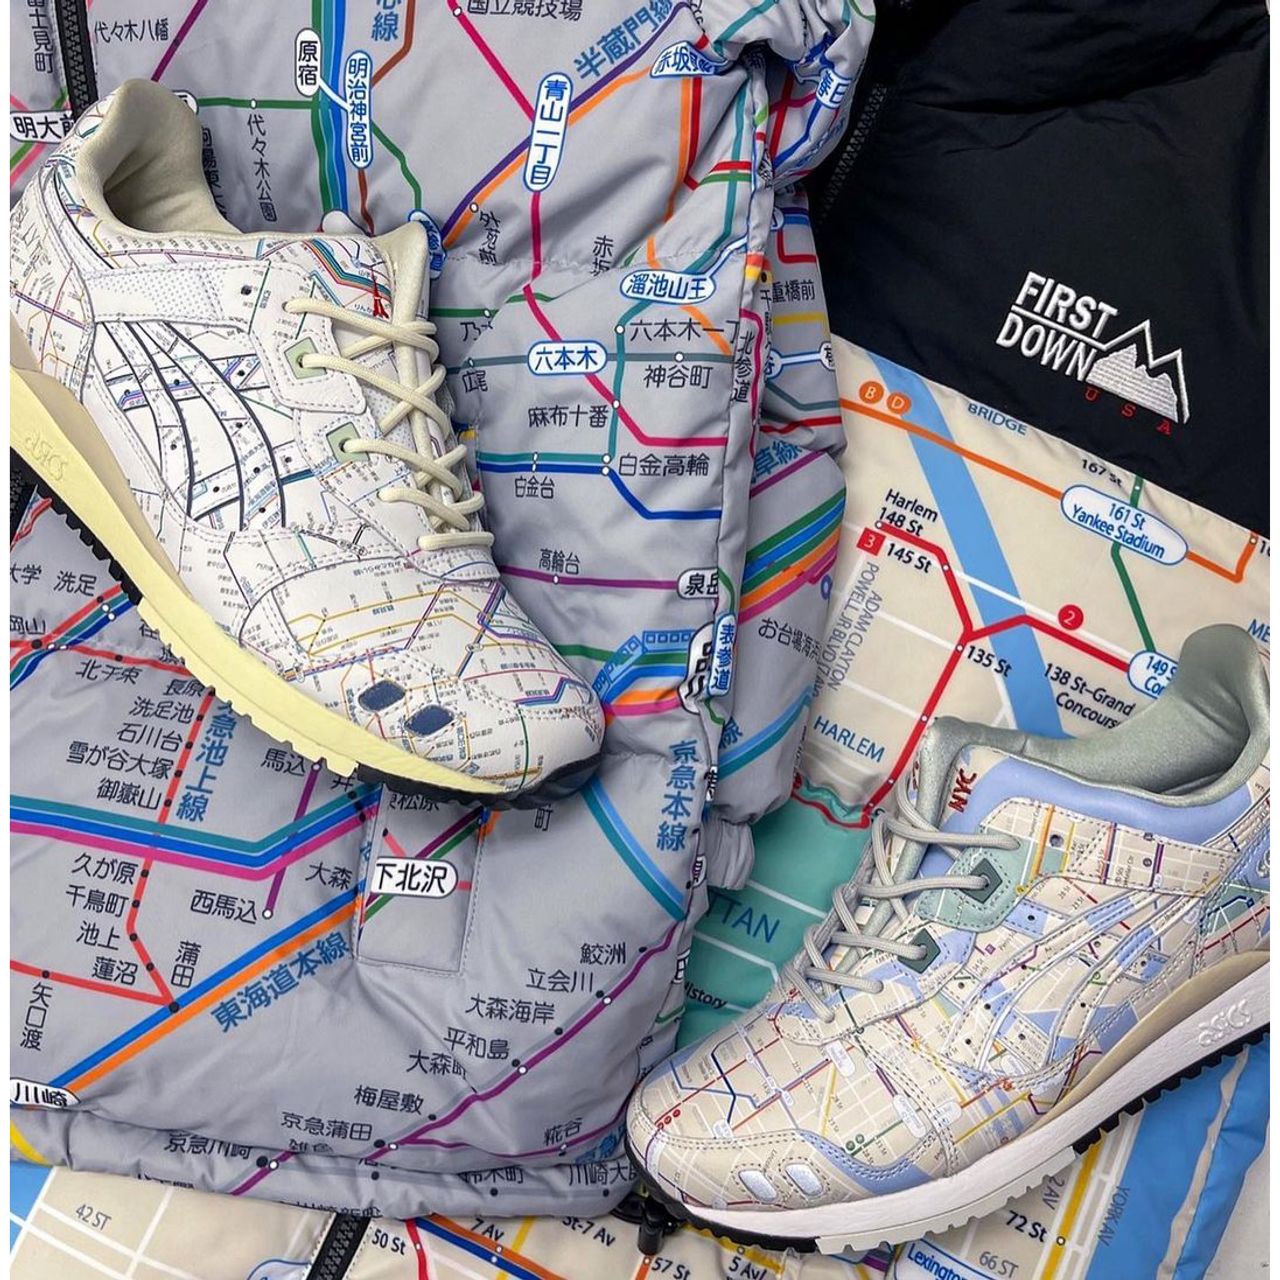 Những đường ray sắc màu, đặc trưng cho bản đồ tàu điện ngầm của Tokyo xuất hiện dày đặc trên đôi giày sneakers này và tạo nên một điểm nhấn thú vị. Thiết kế giày sneakers tối giản nên phù hợp cho nhiều hoạt động thể thao khác nhau.